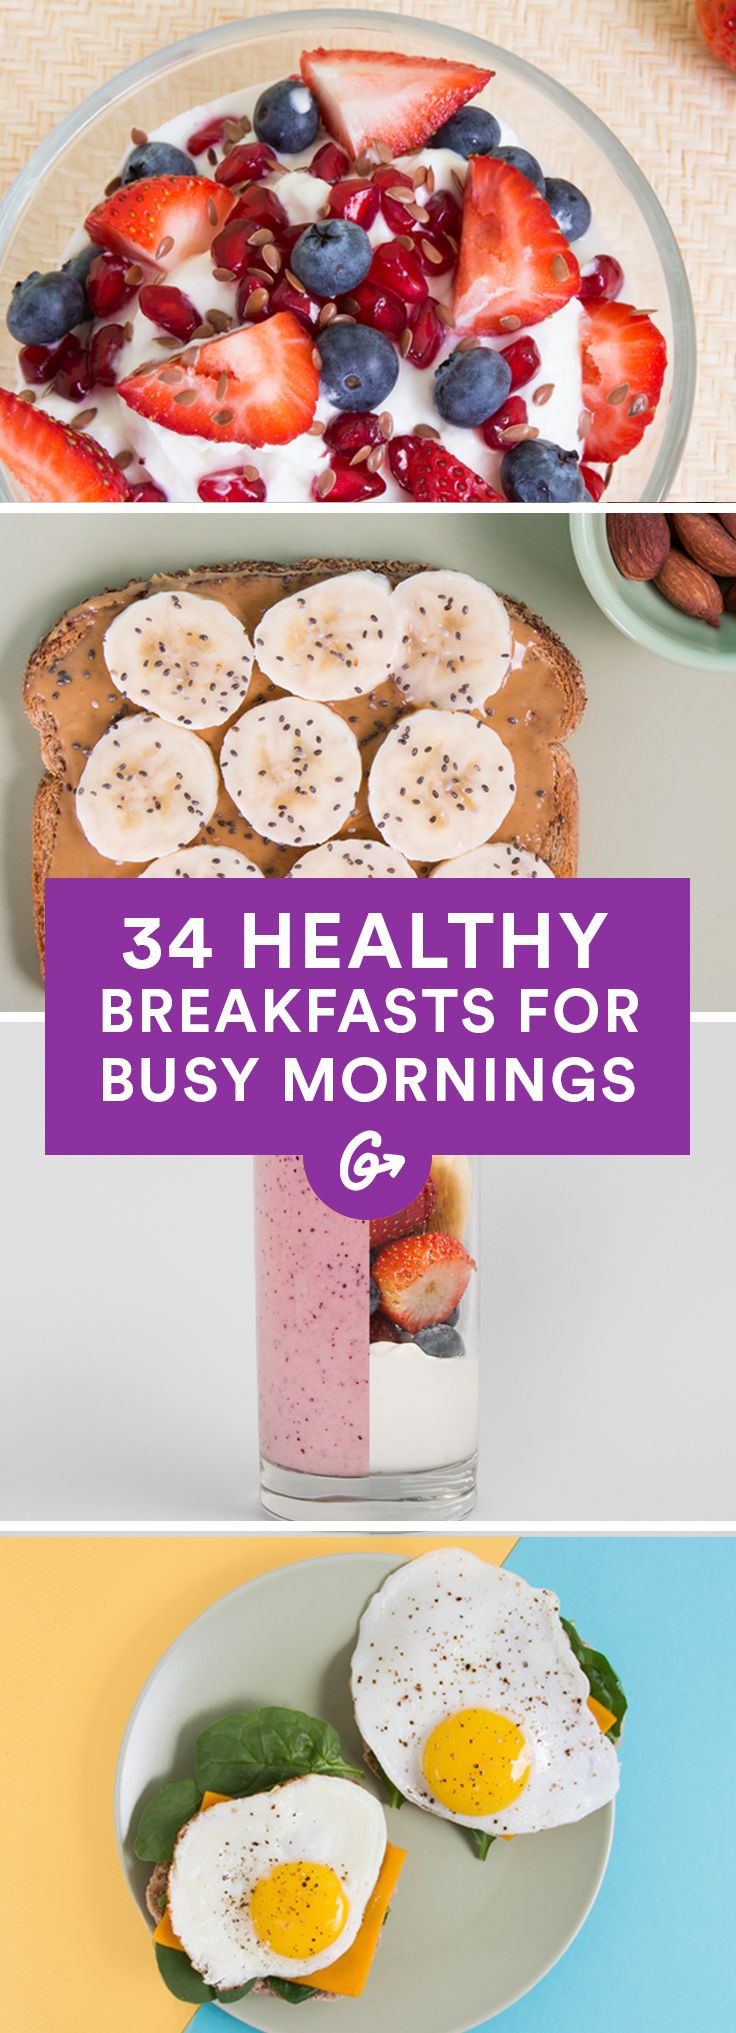 Pinterest Healthy Breakfast the Best Best 25 Healthy Breakfasts Ideas On Pinterest